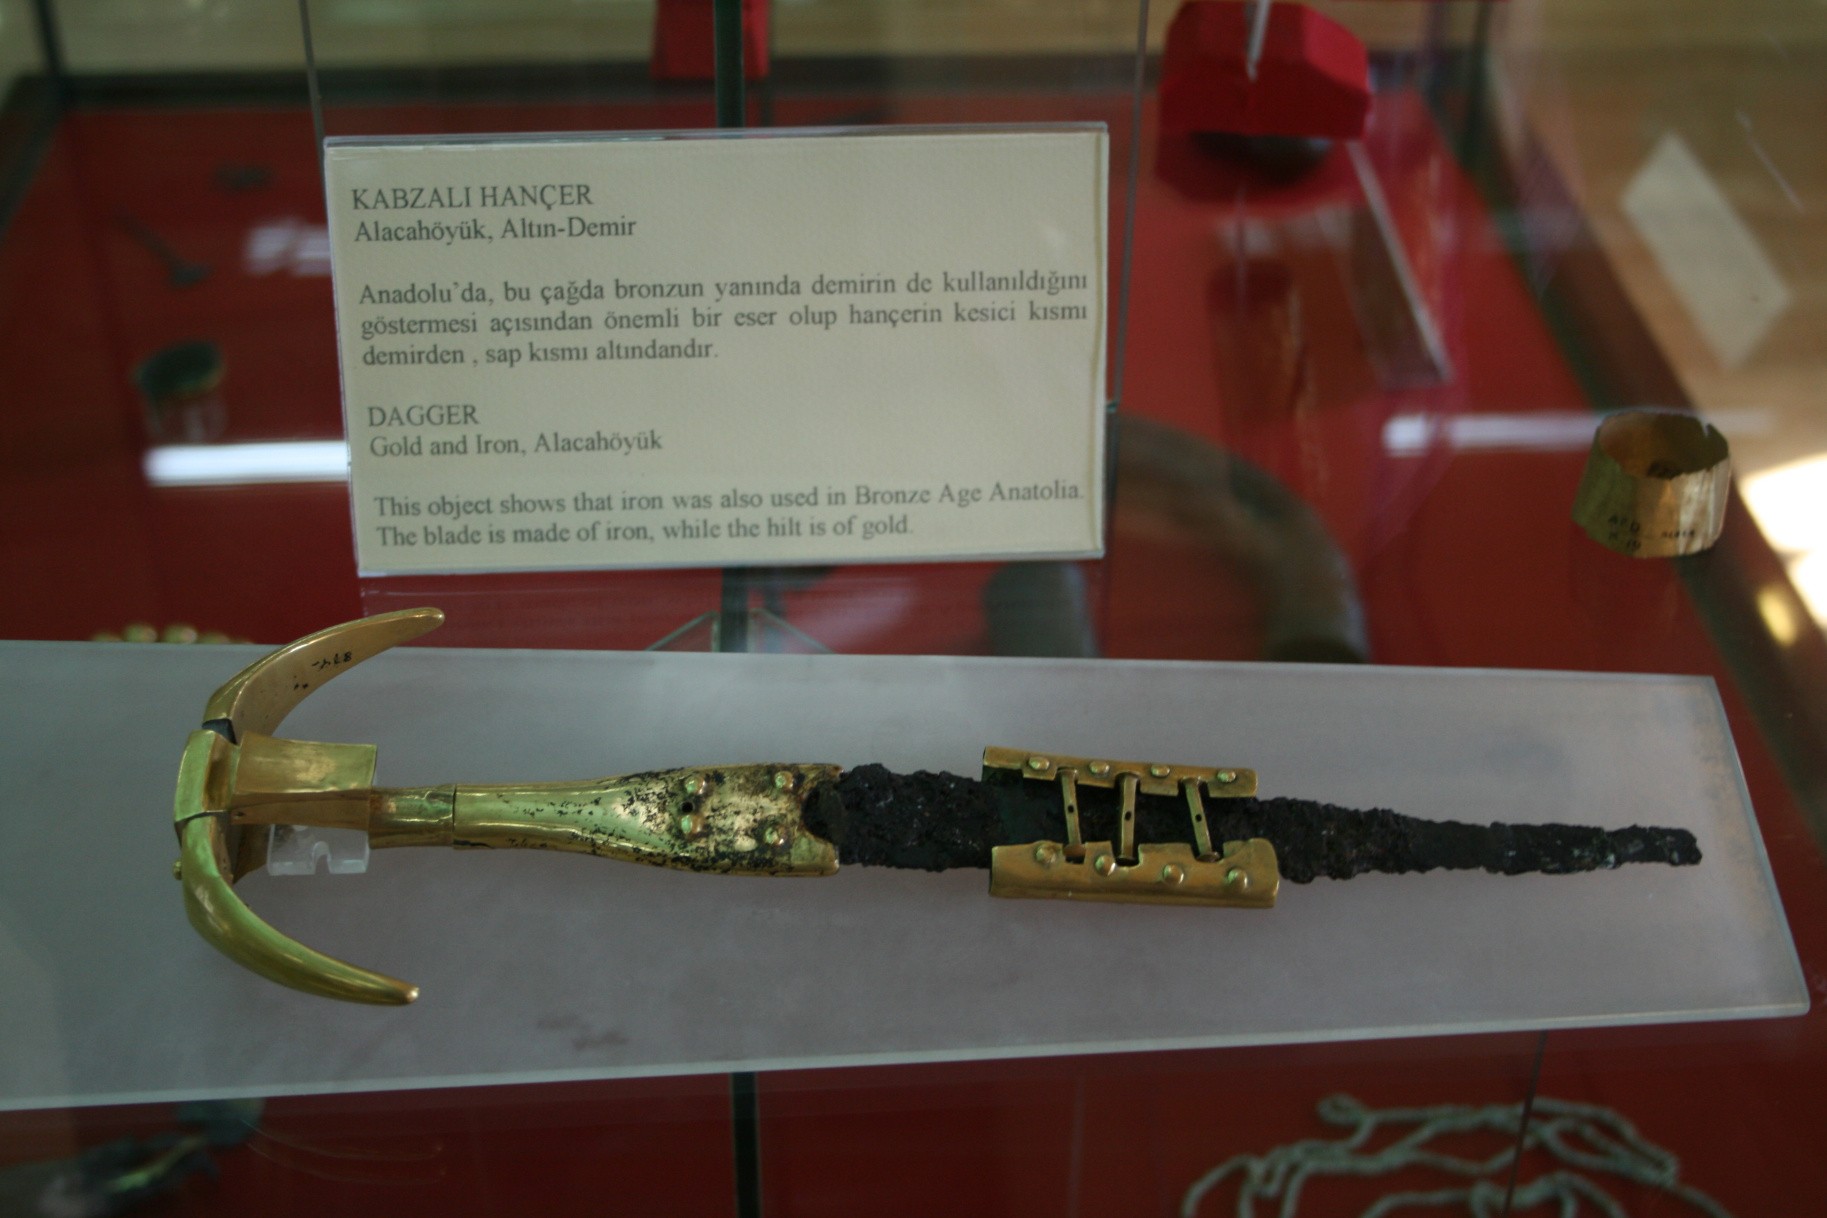 Uma adaga de Alacahöyük, um sítio arqueológico na Turquia. É feito de ferro e ouro, comprimento 18.5 cm. Ela remonta à Idade do Bronze, 2500-2000 aC.